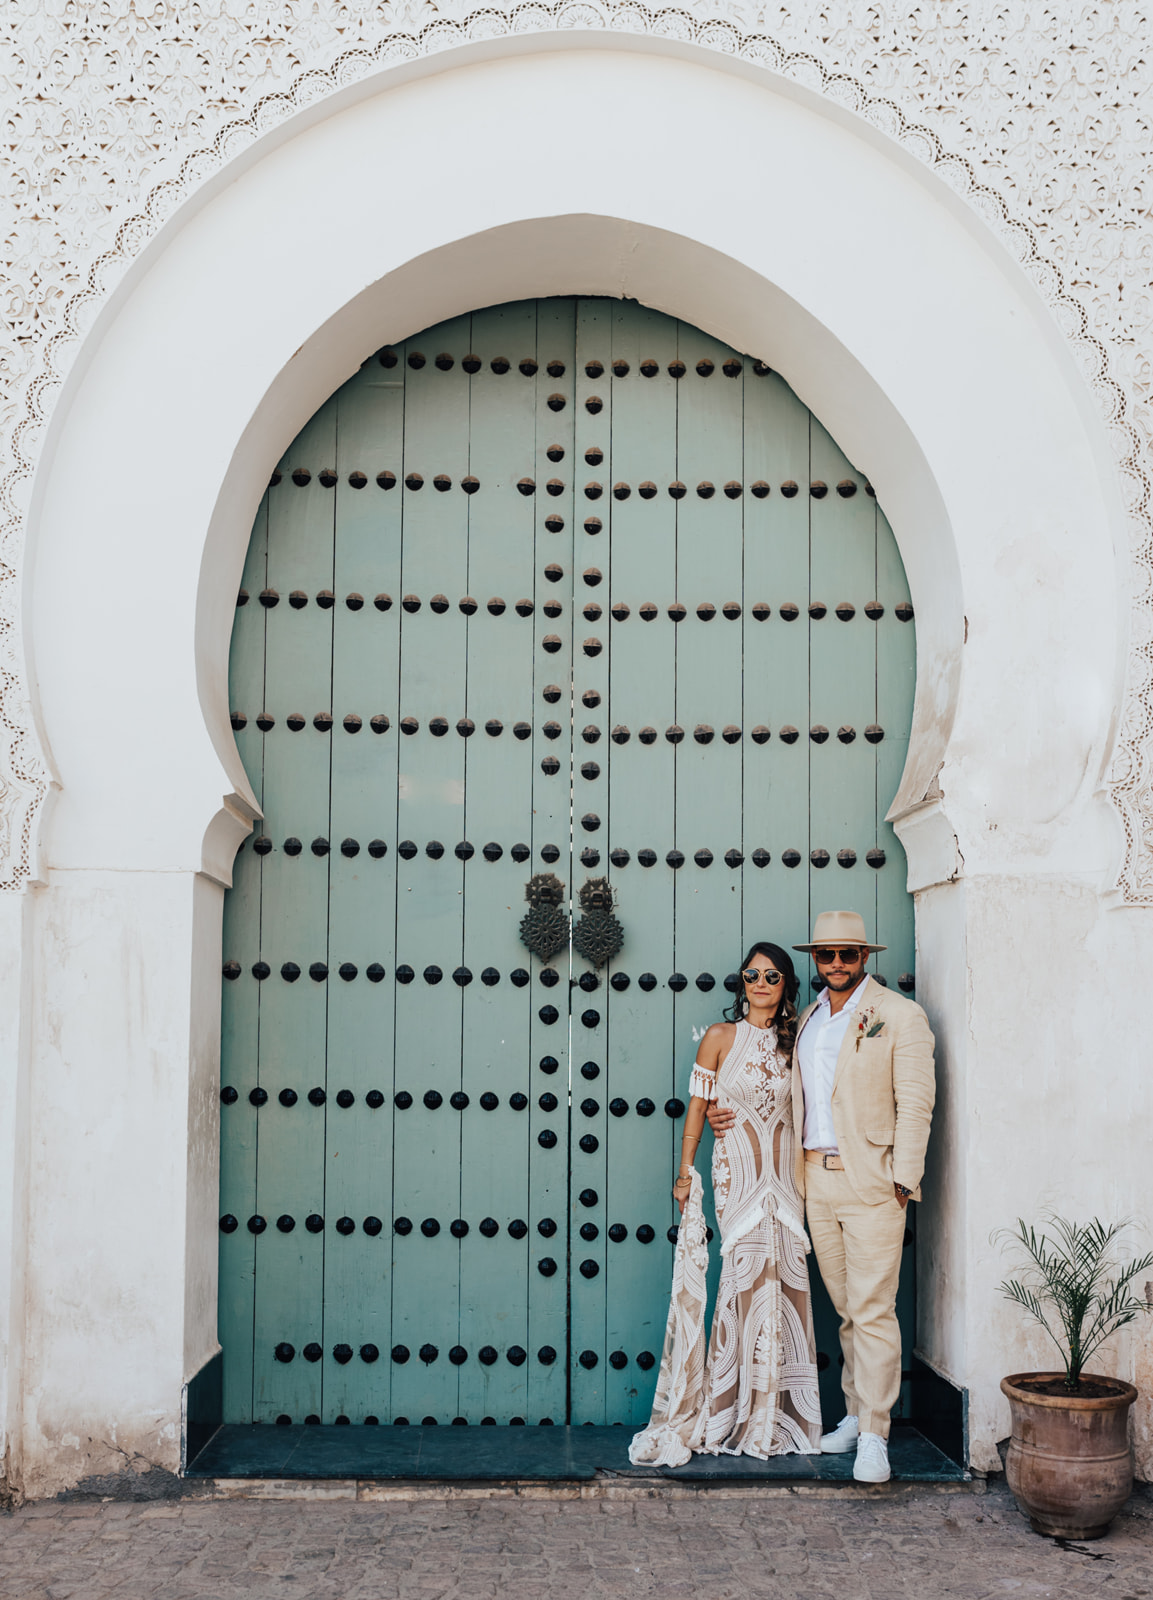 Morocco wedding photographer